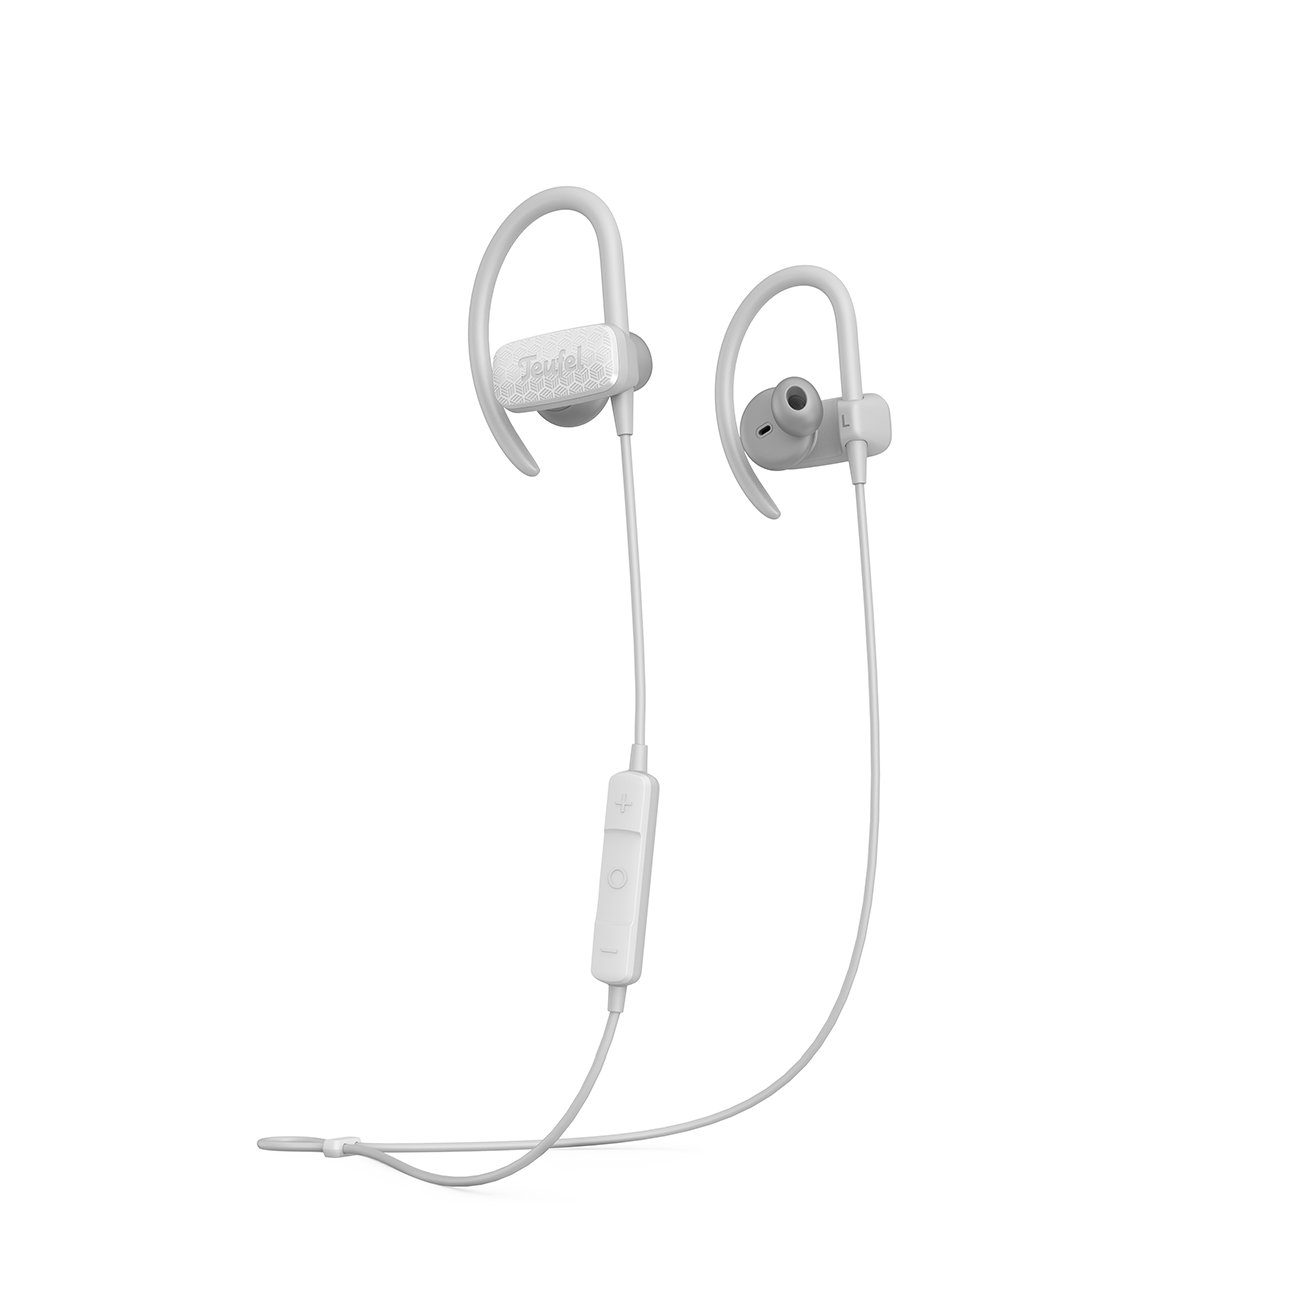 Teufel AIRY SPORTS Bluetooth-Kopfhörer (Wasserdicht nach IPX7, Freisprecheinrichtung mit Qualcomm, ShareMe-Funktion: zwei Kopfhörer kabellos mit einem Smartphone verbinden) Moon Gray